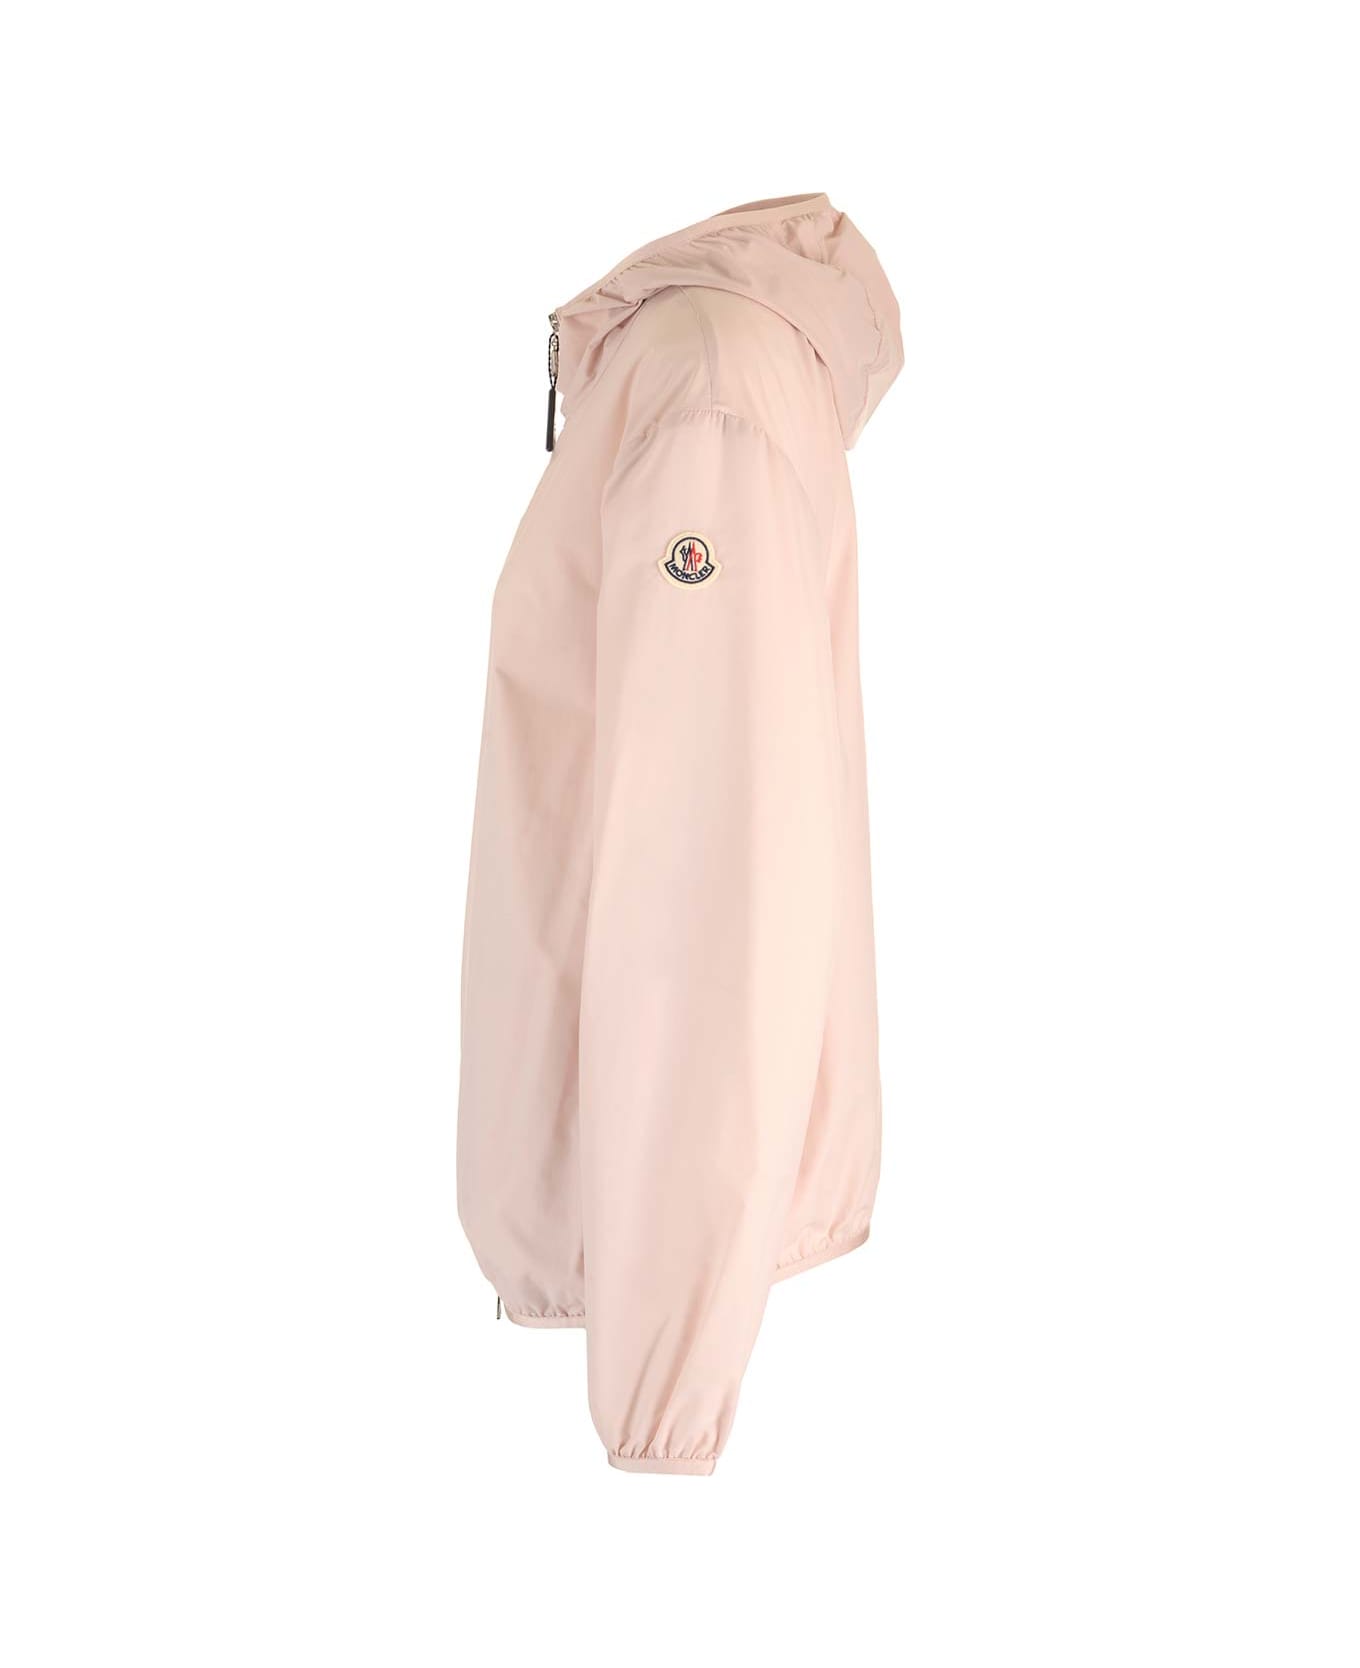 Moncler Pastel Pink 'fegeo' Jacket - 50x